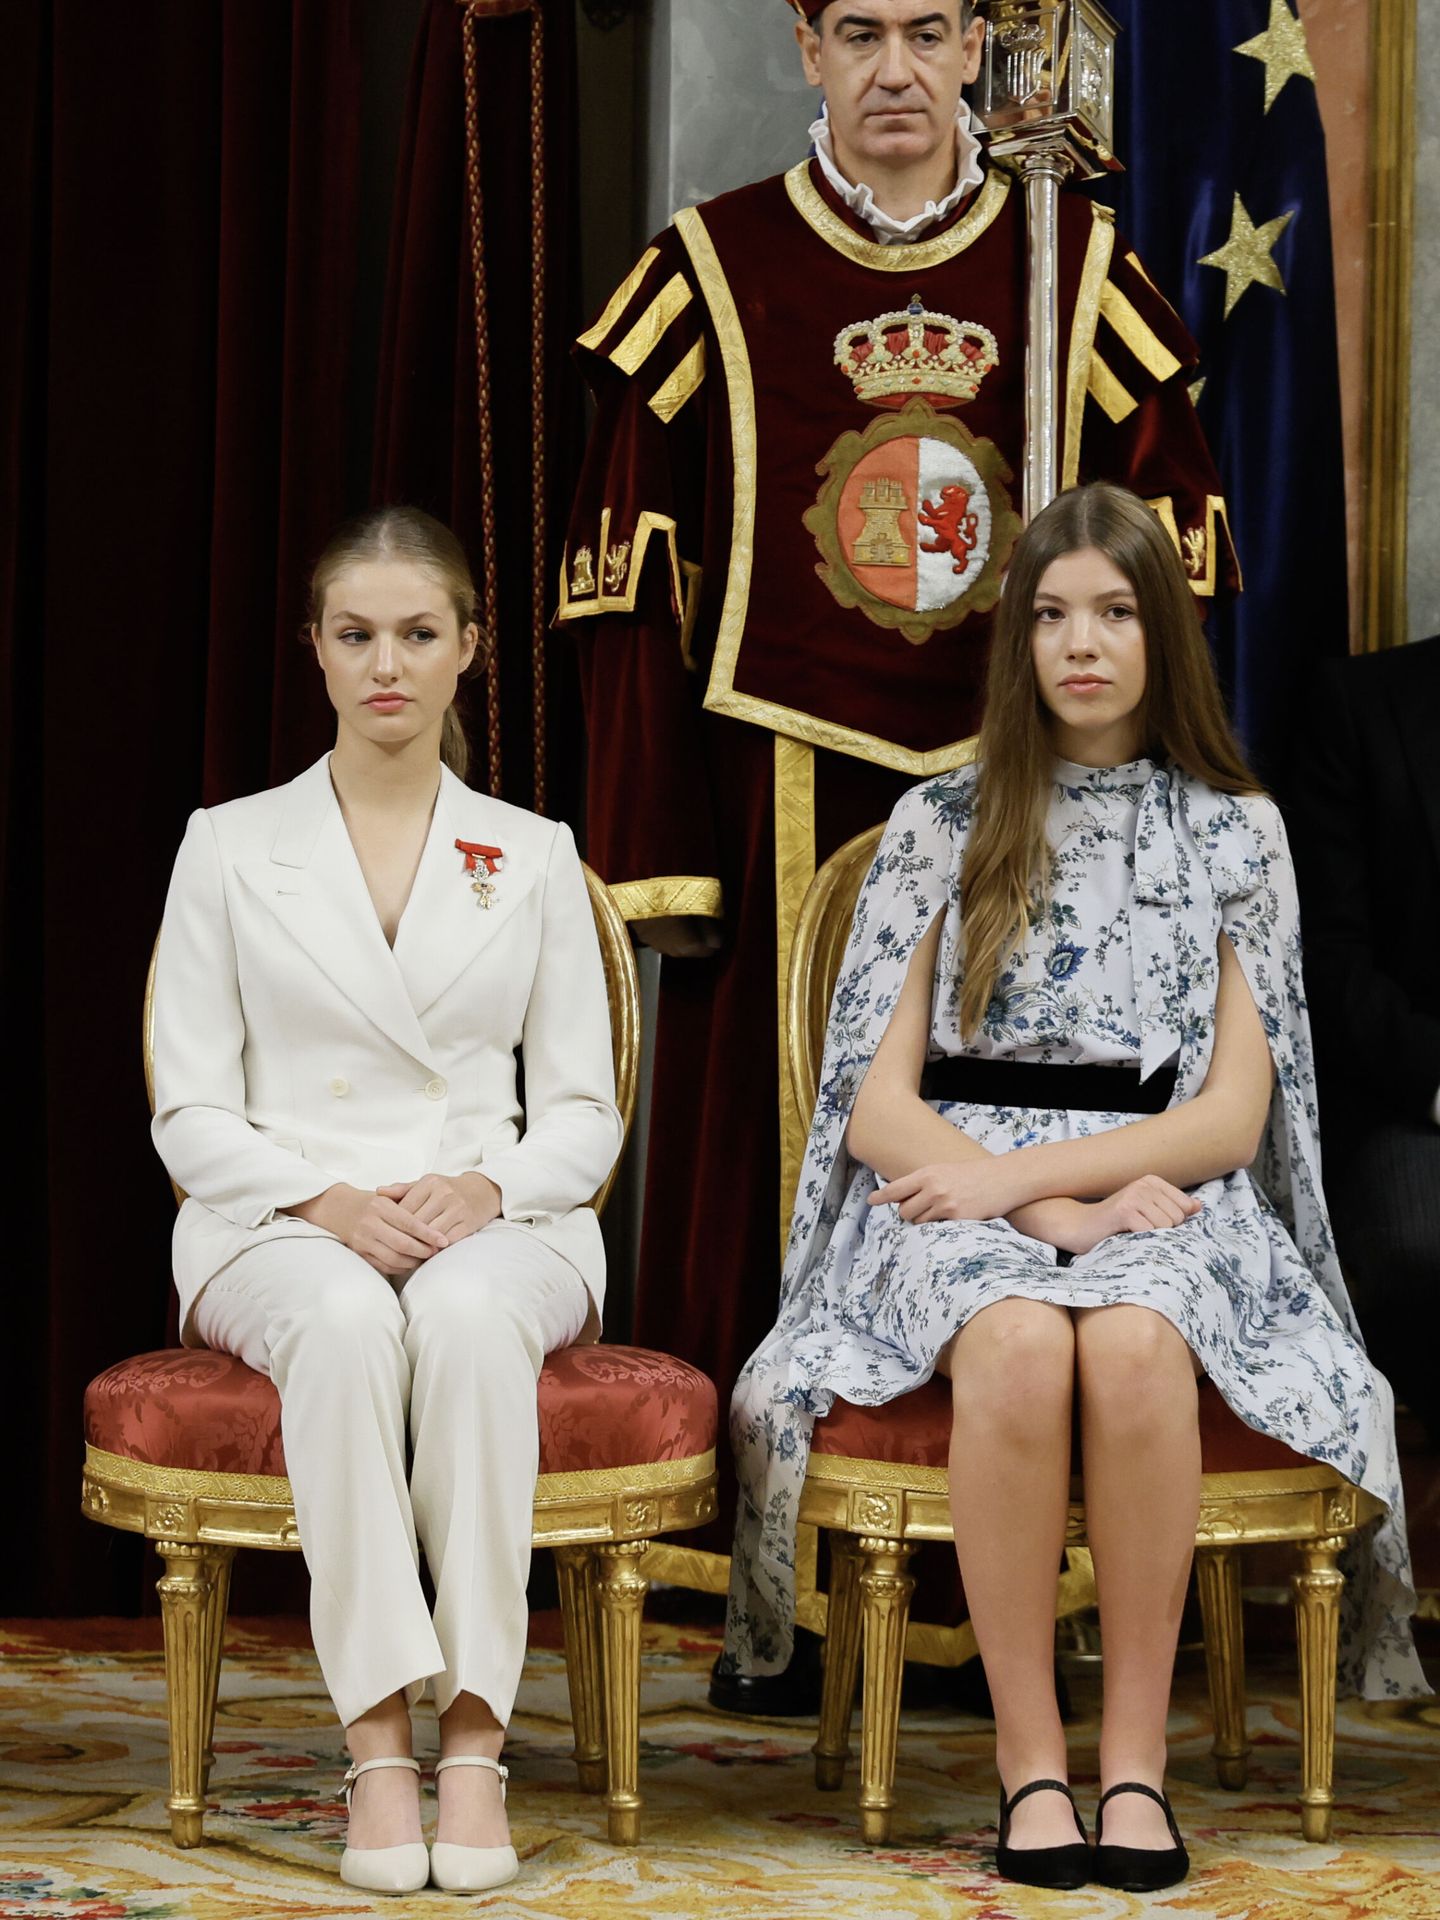 La Princesa de Asturias, acompañada por su hermana, la infanta Sofía, durante la ceremonia de jura de la Constitución. (EFE/ Ballesteros)